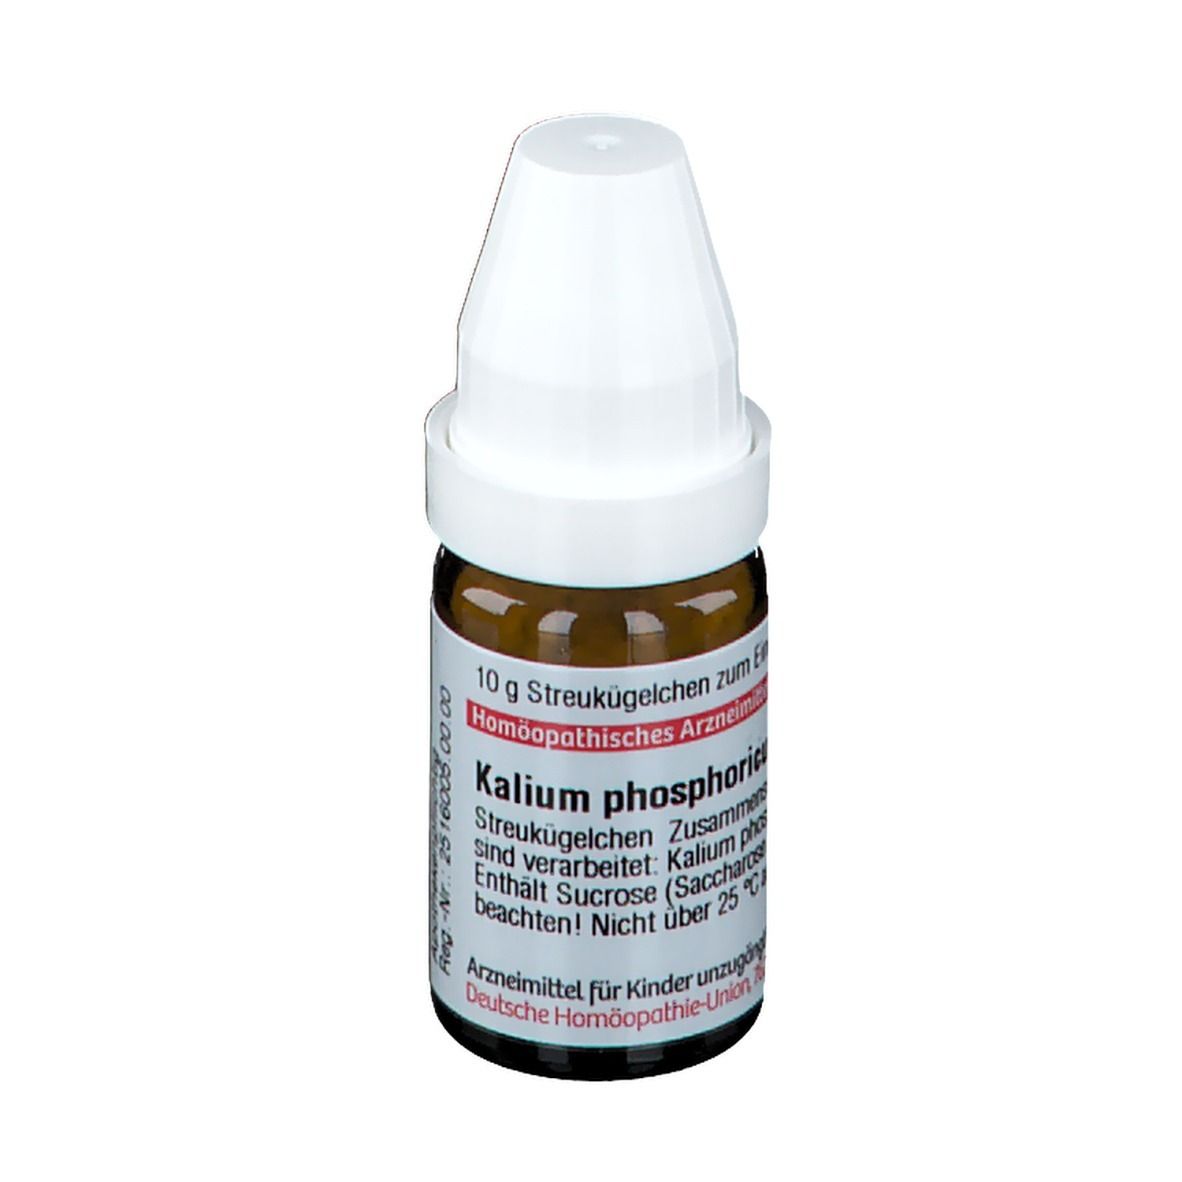 DHU Kalium Phosphoricum C12